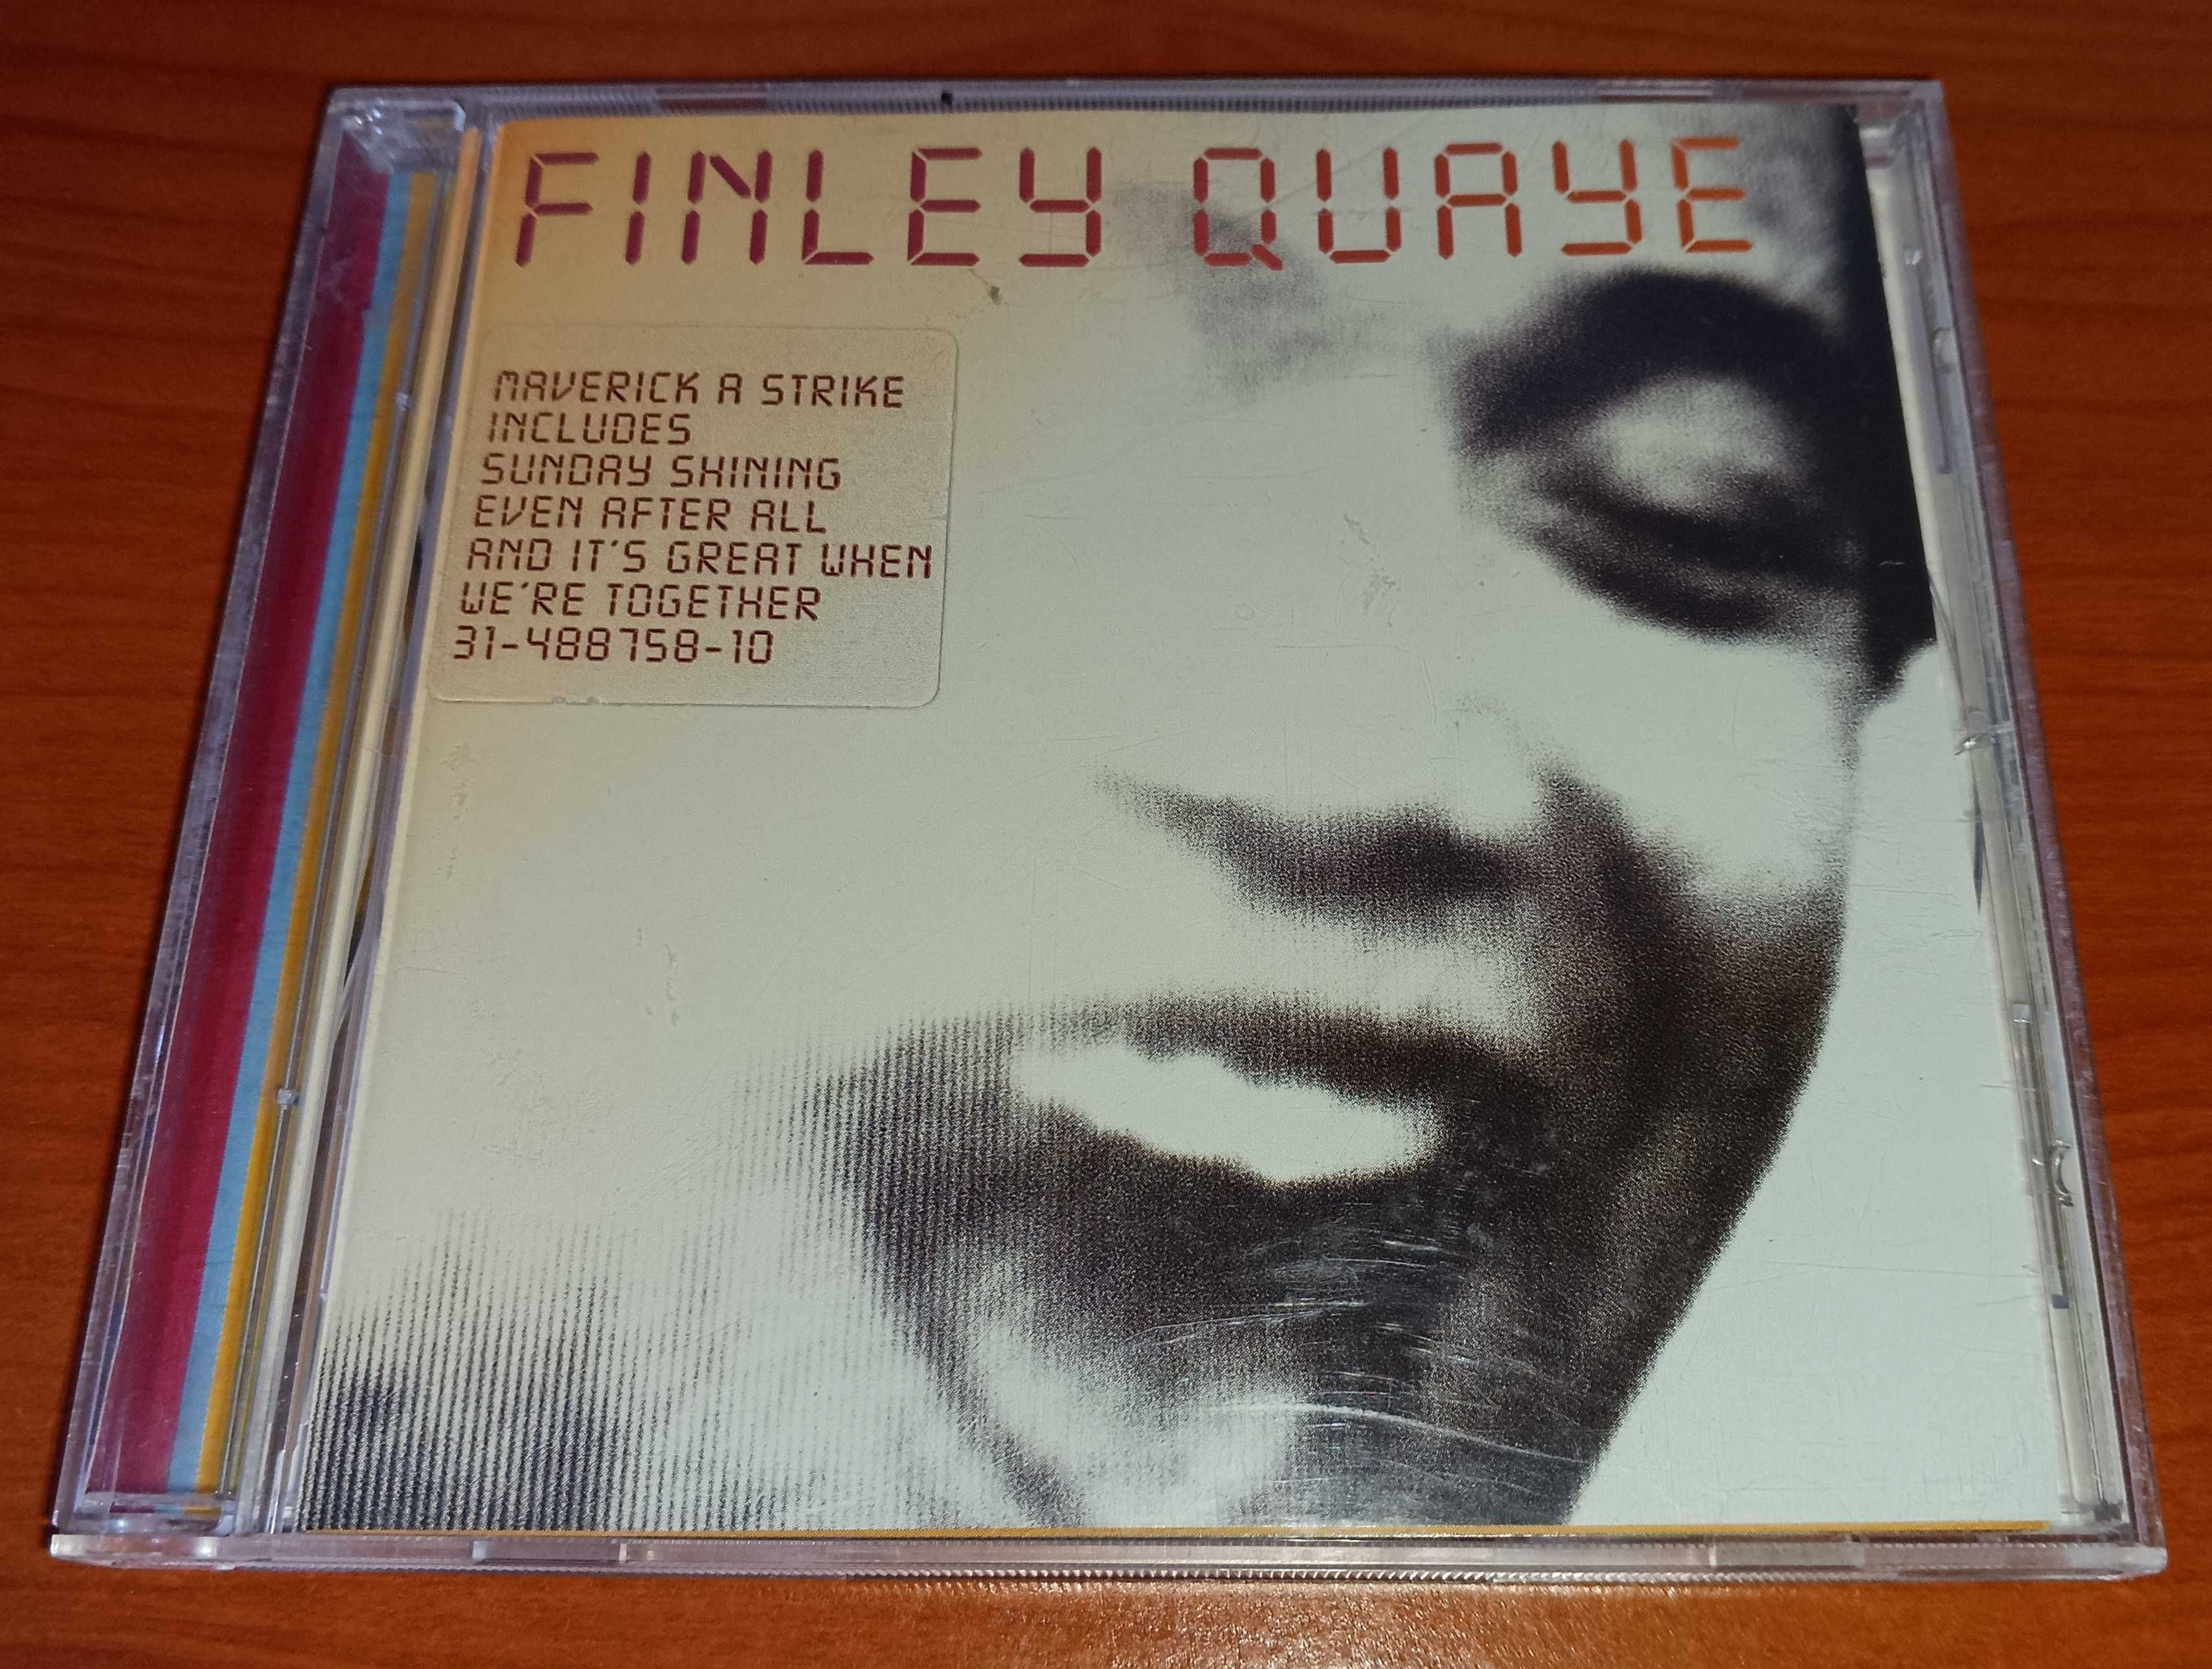 CD Finley Quaye - Maverick a Strike